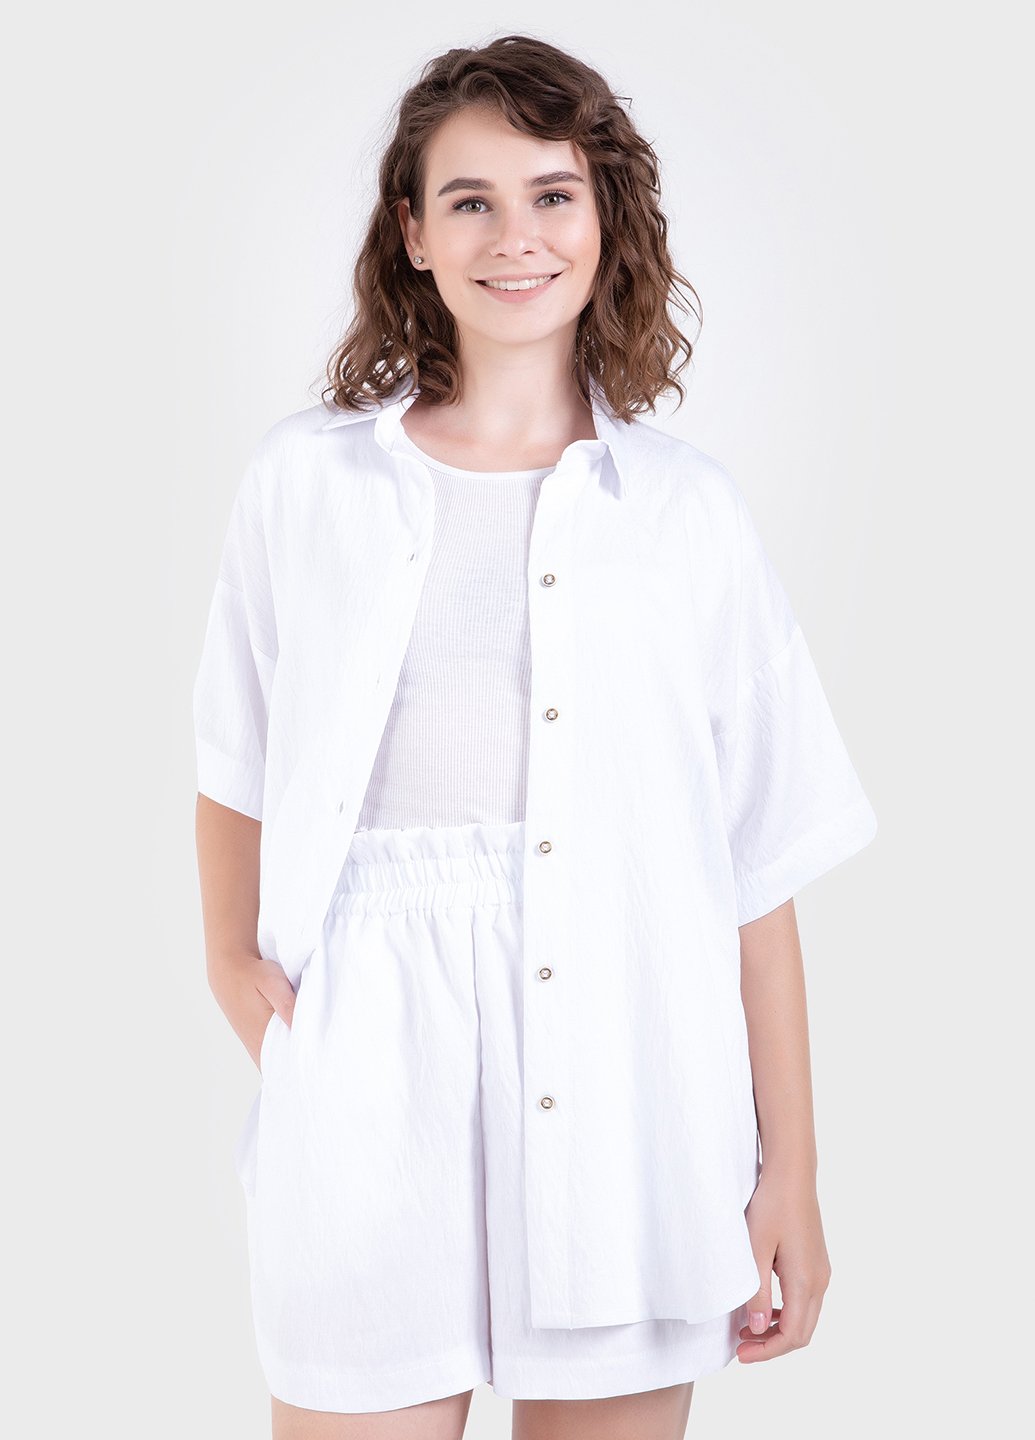 Купить Оверсайз рубашка женская белого цвета из льна-жатки Merlini Авеллино 200000065, размер 42-44 в интернет-магазине